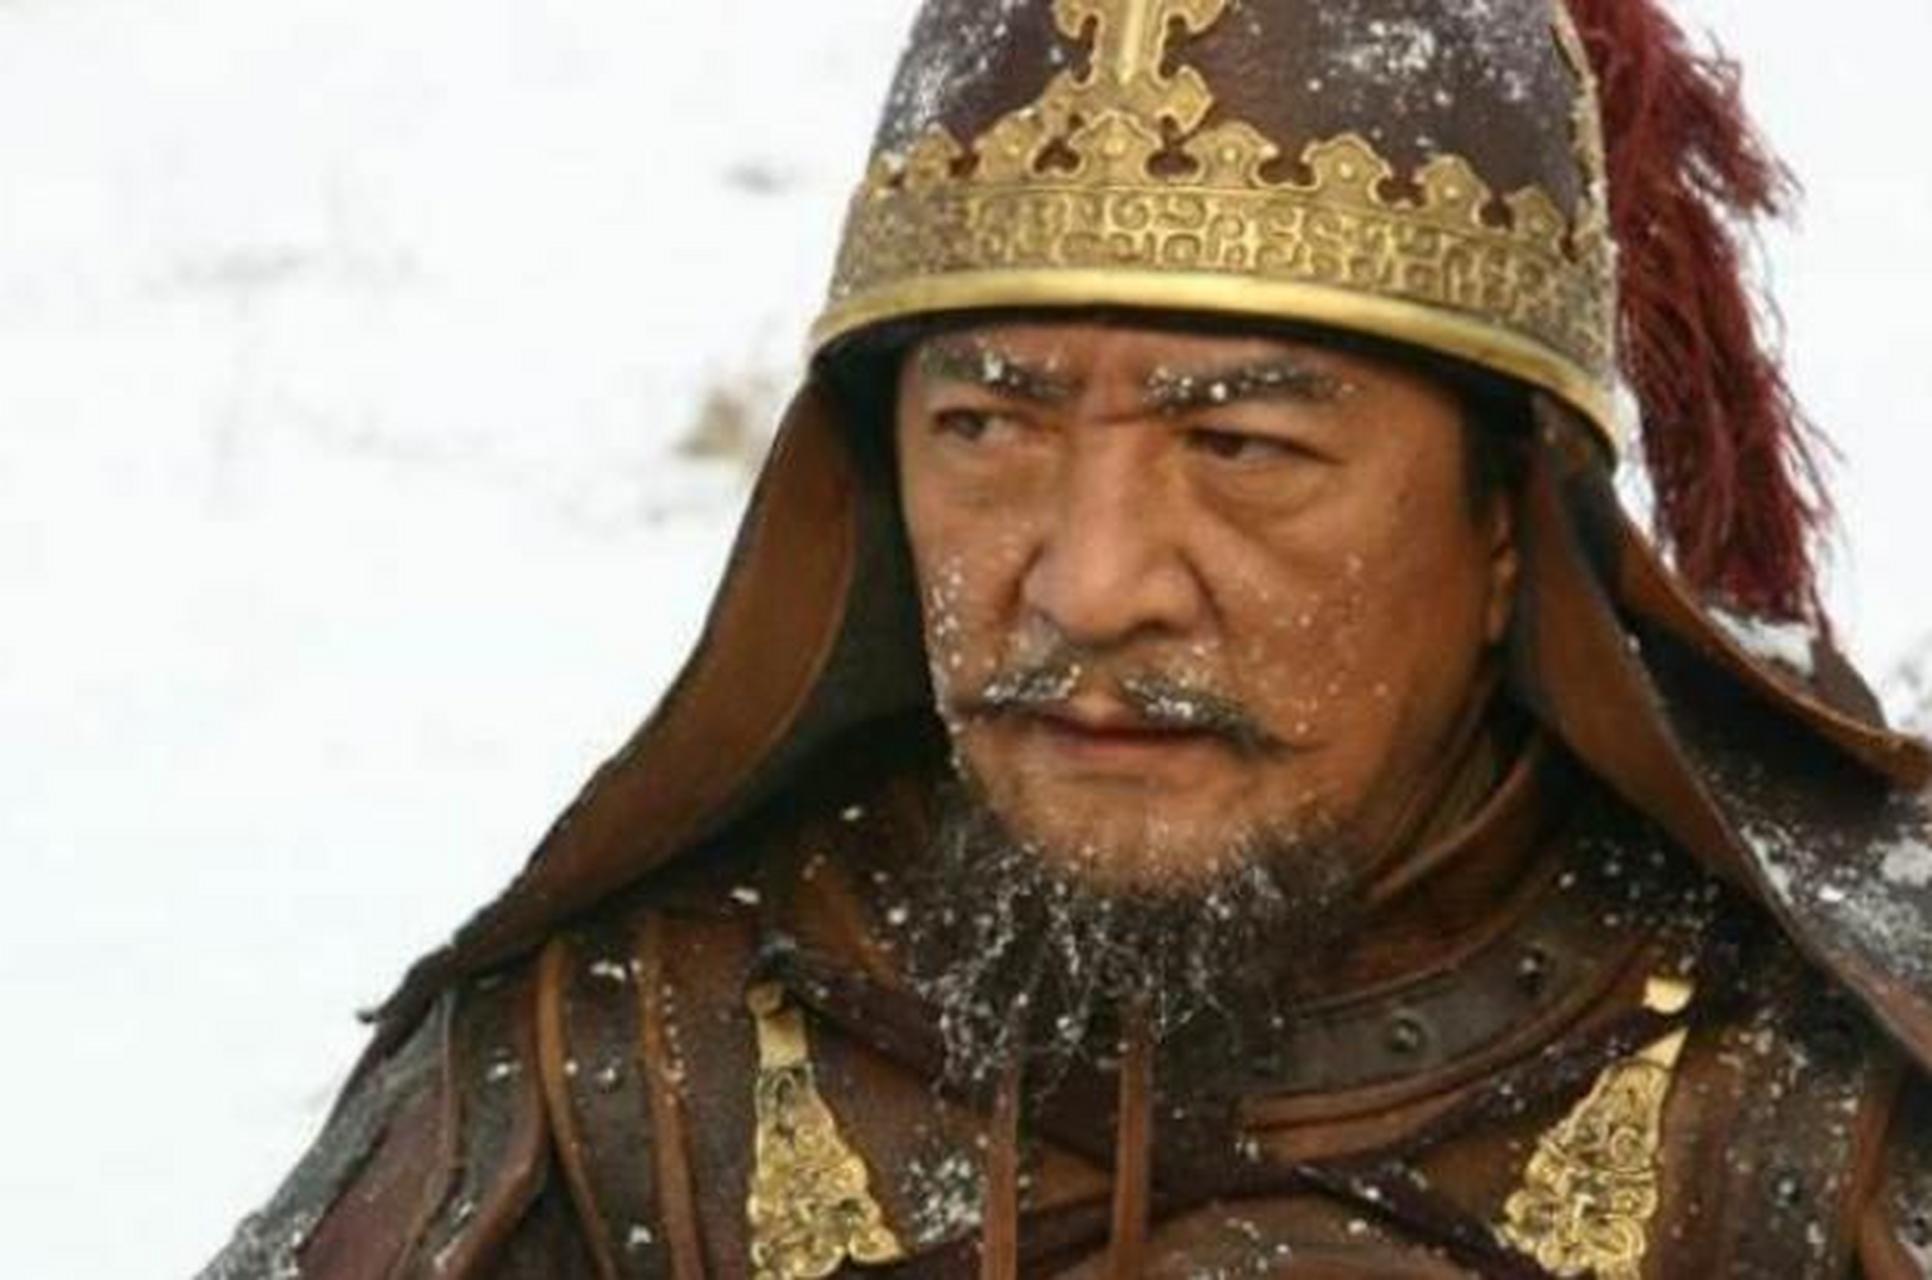 如果要说唐朝的武将,那李靖就绝对是一个绕不开的名字,因为他无论战功